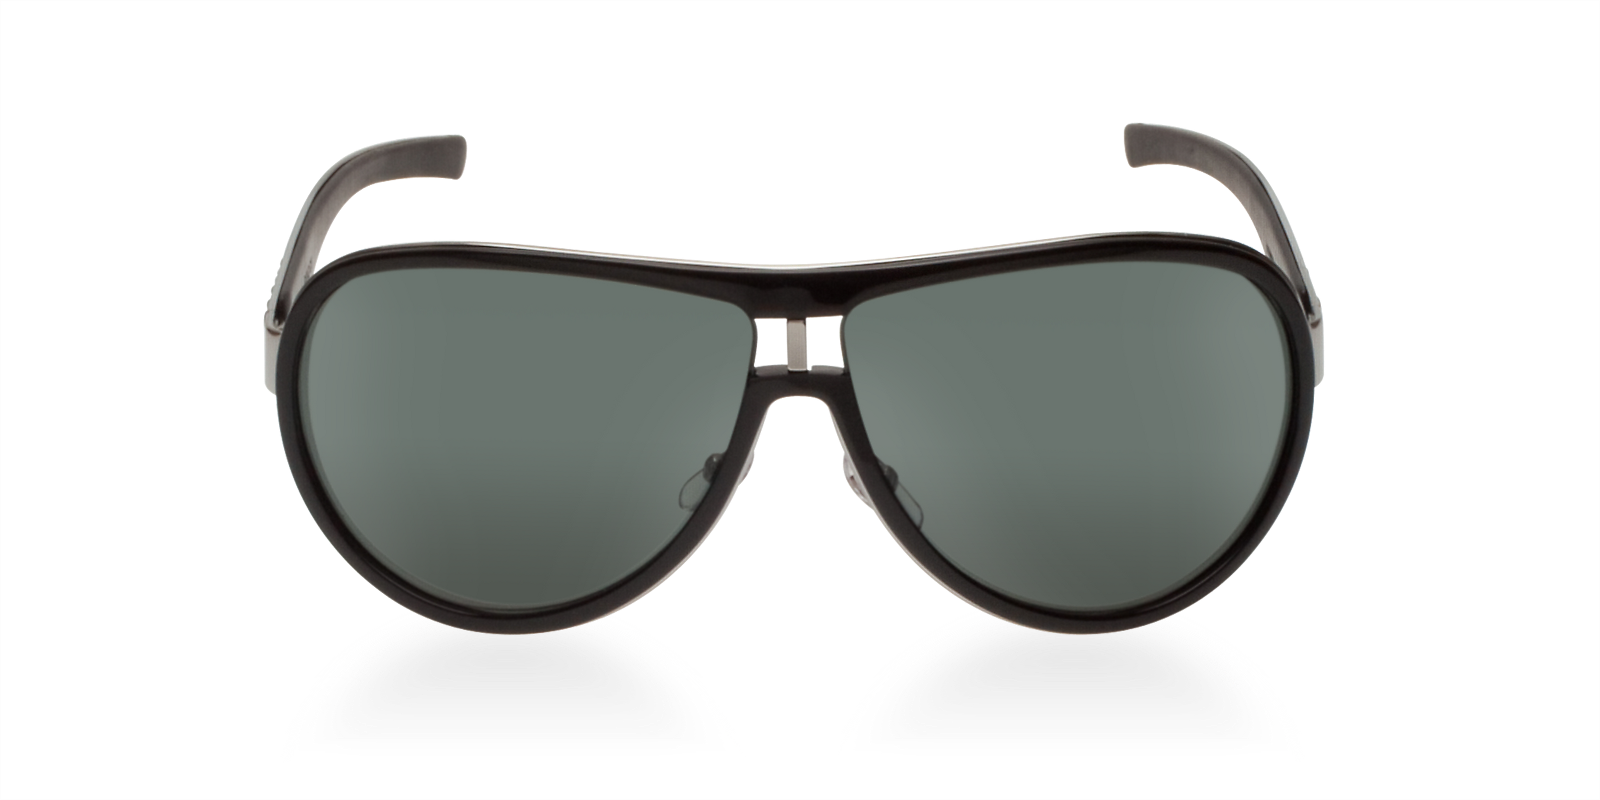 Gucci Sunglasses Design 2012 - Fashion Style Trends 2019